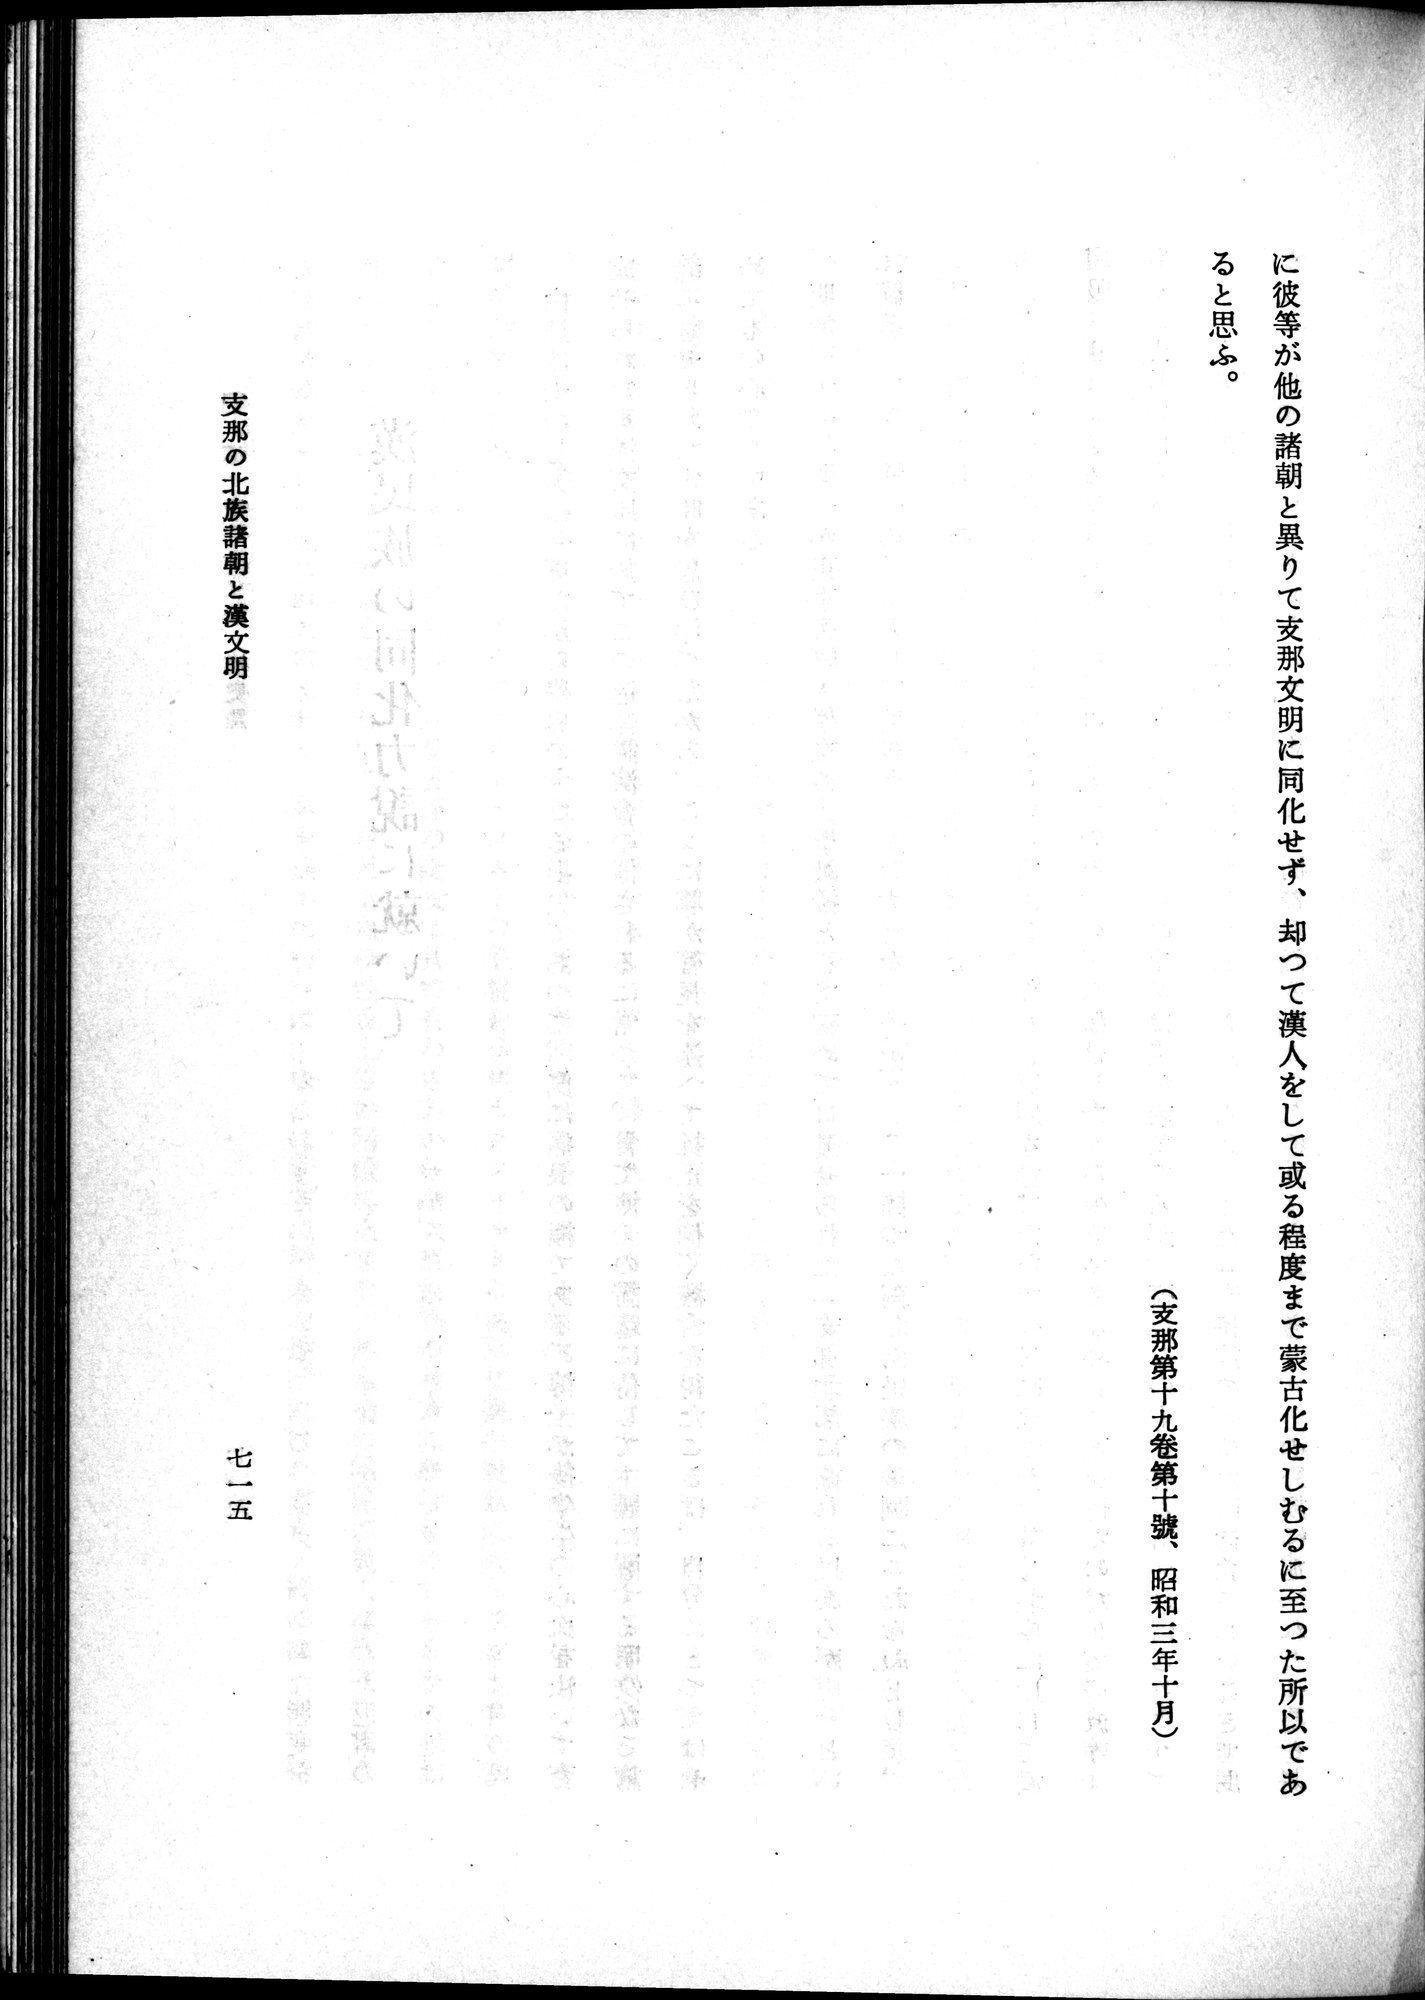 羽田博士史学論文集 : vol.1 / Page 753 (Grayscale High Resolution Image)